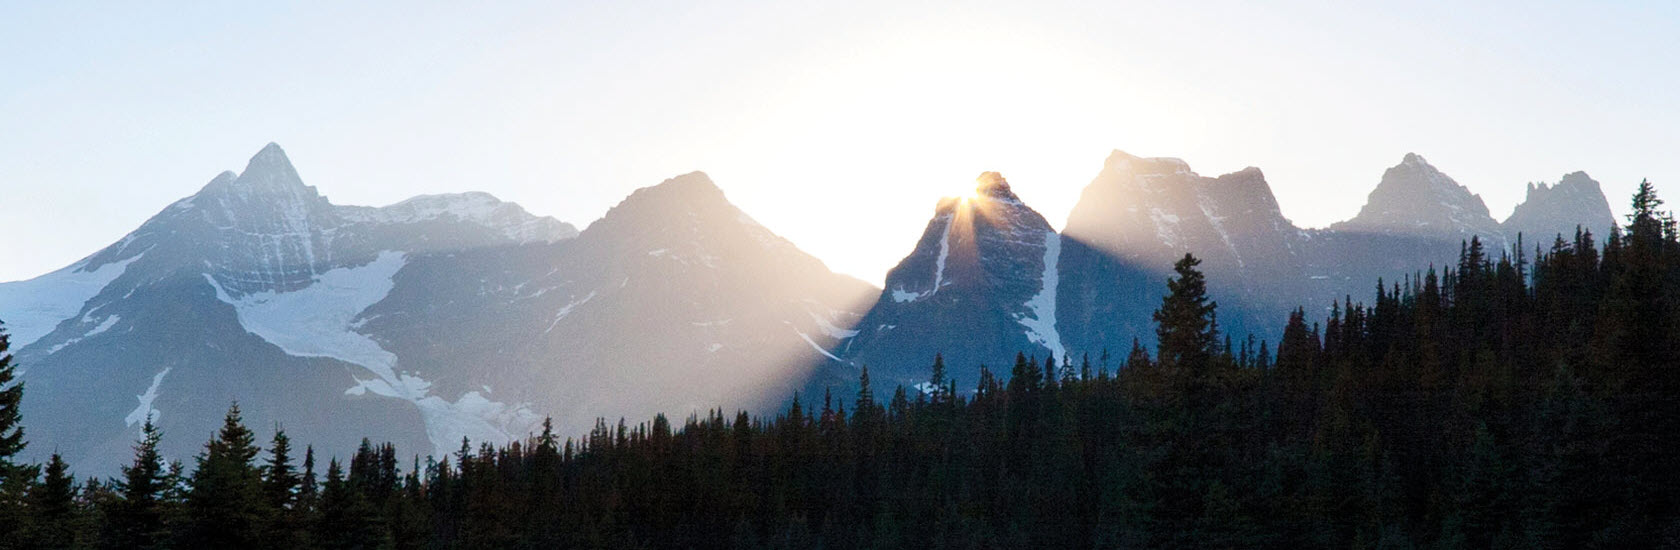 Sun rising over a mountain range